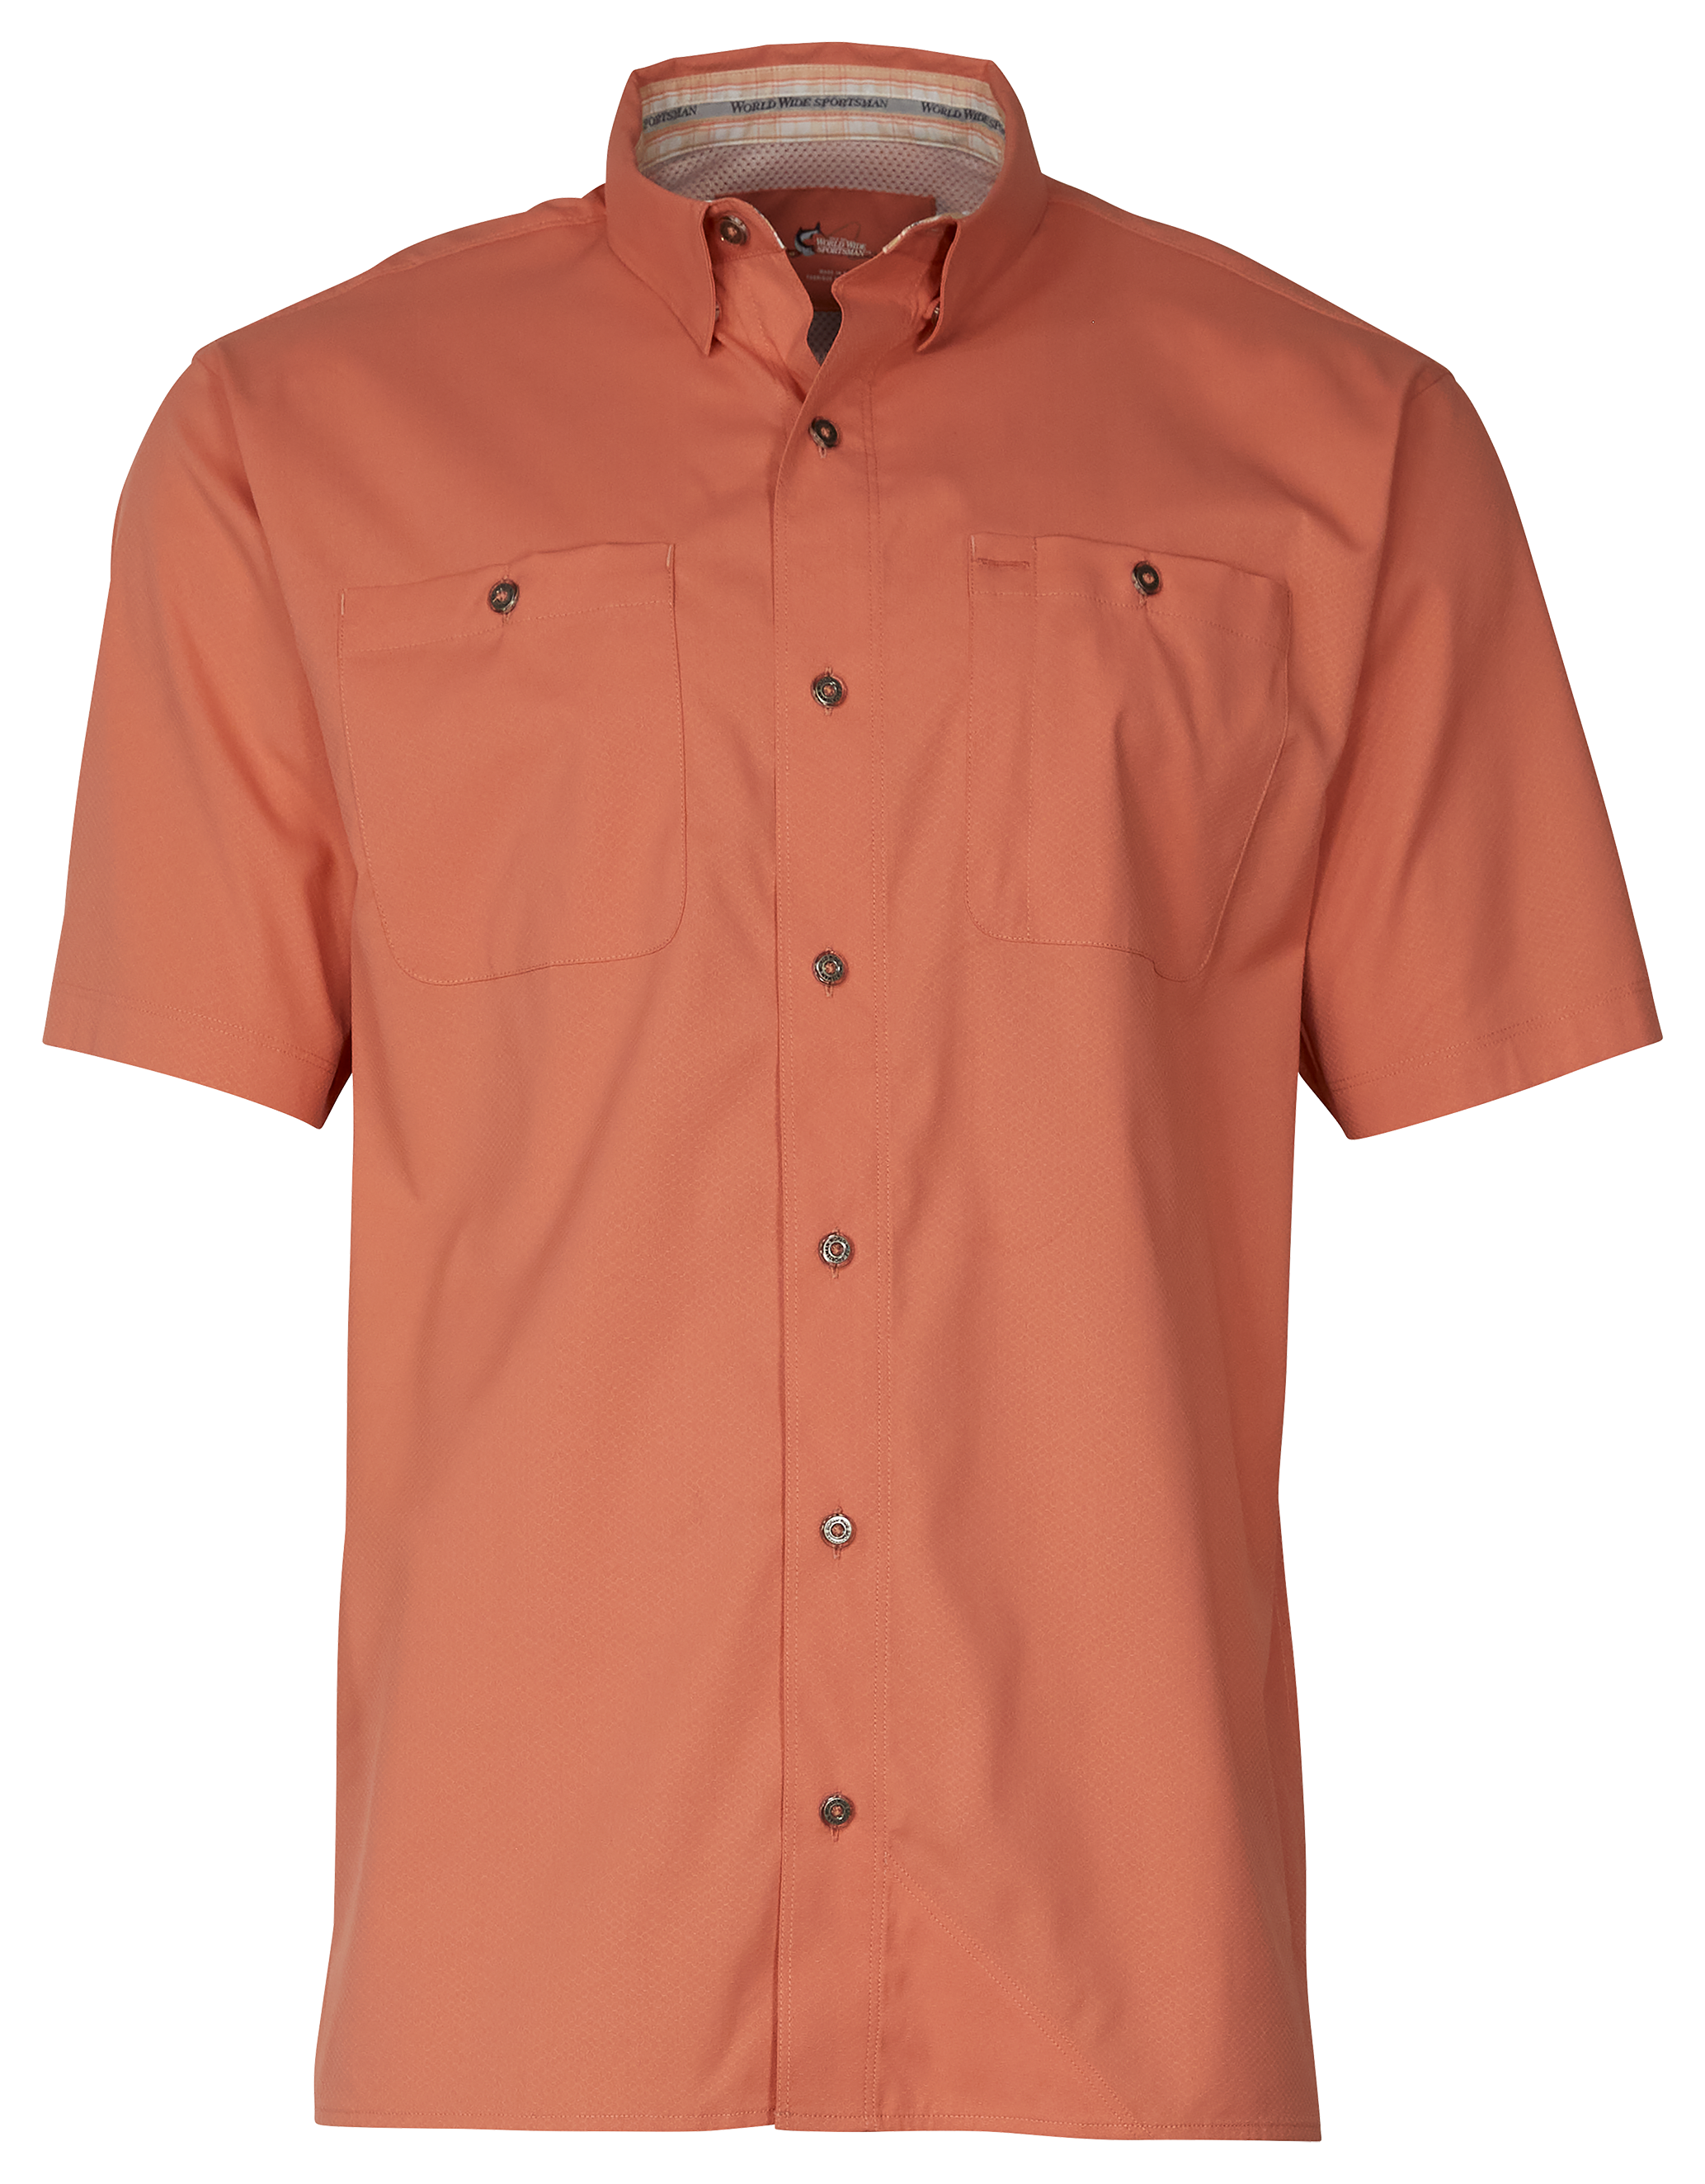 World Wide Sportsman Ultimate Angler Solid Short-Sleeve Shirt for Men - Crabapple - L